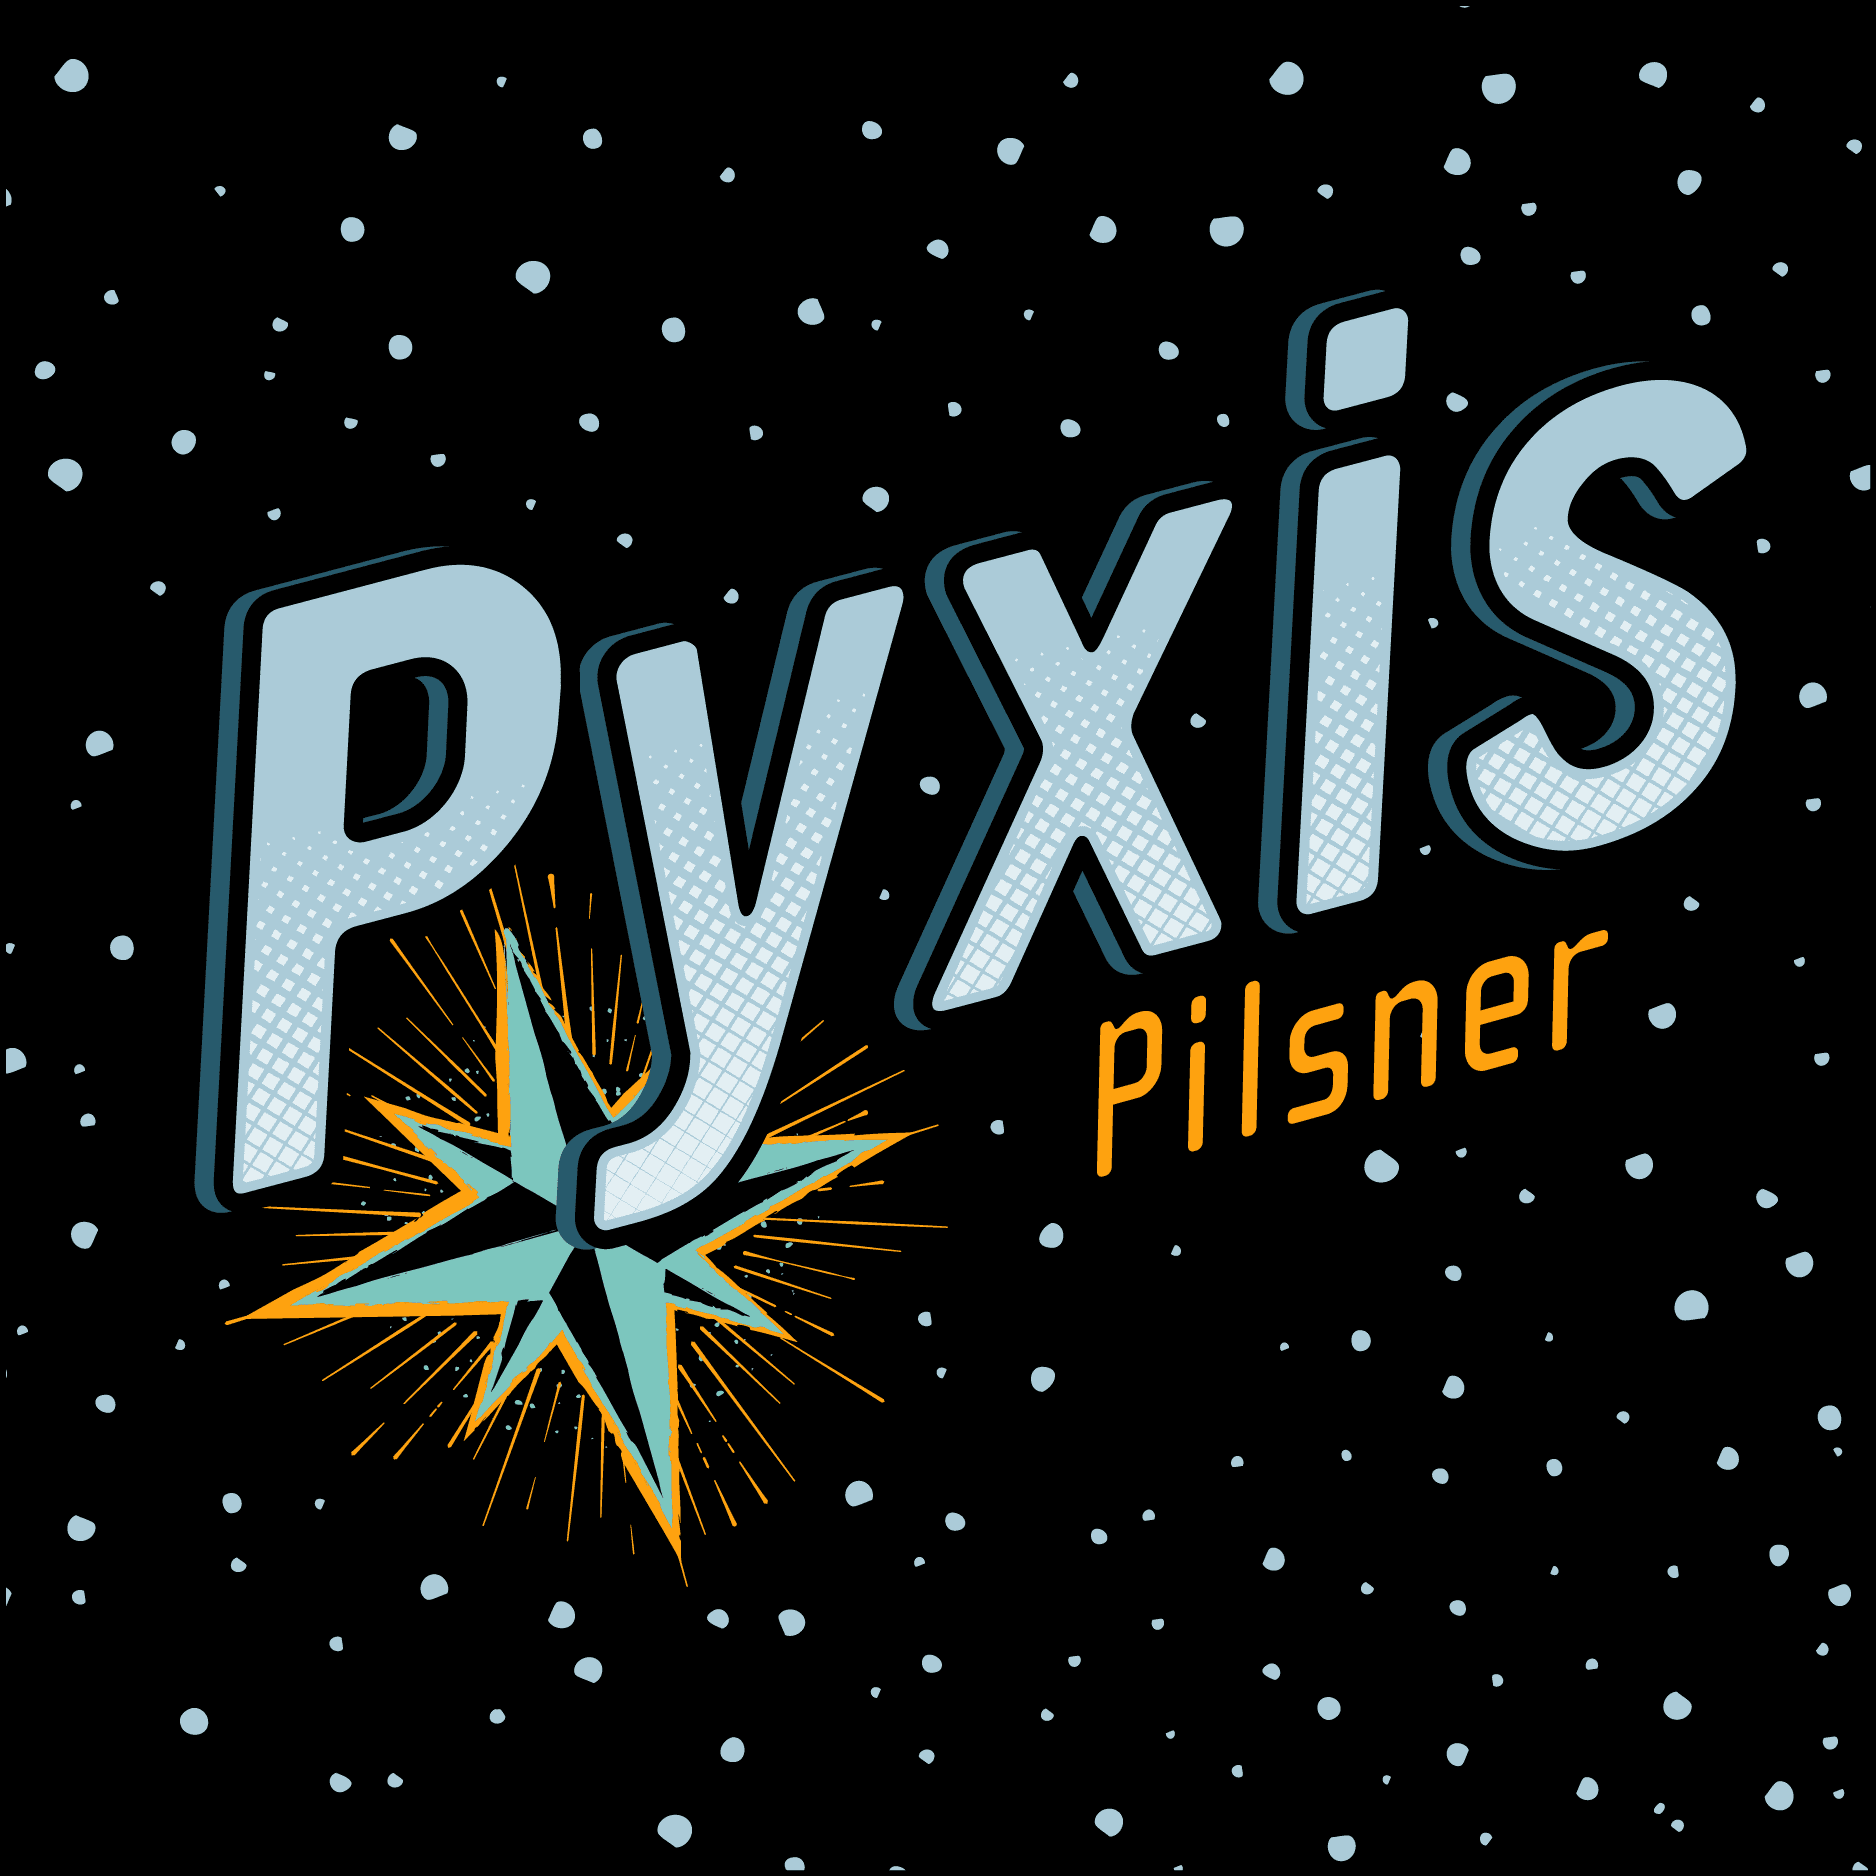 Pyxis Pilsner